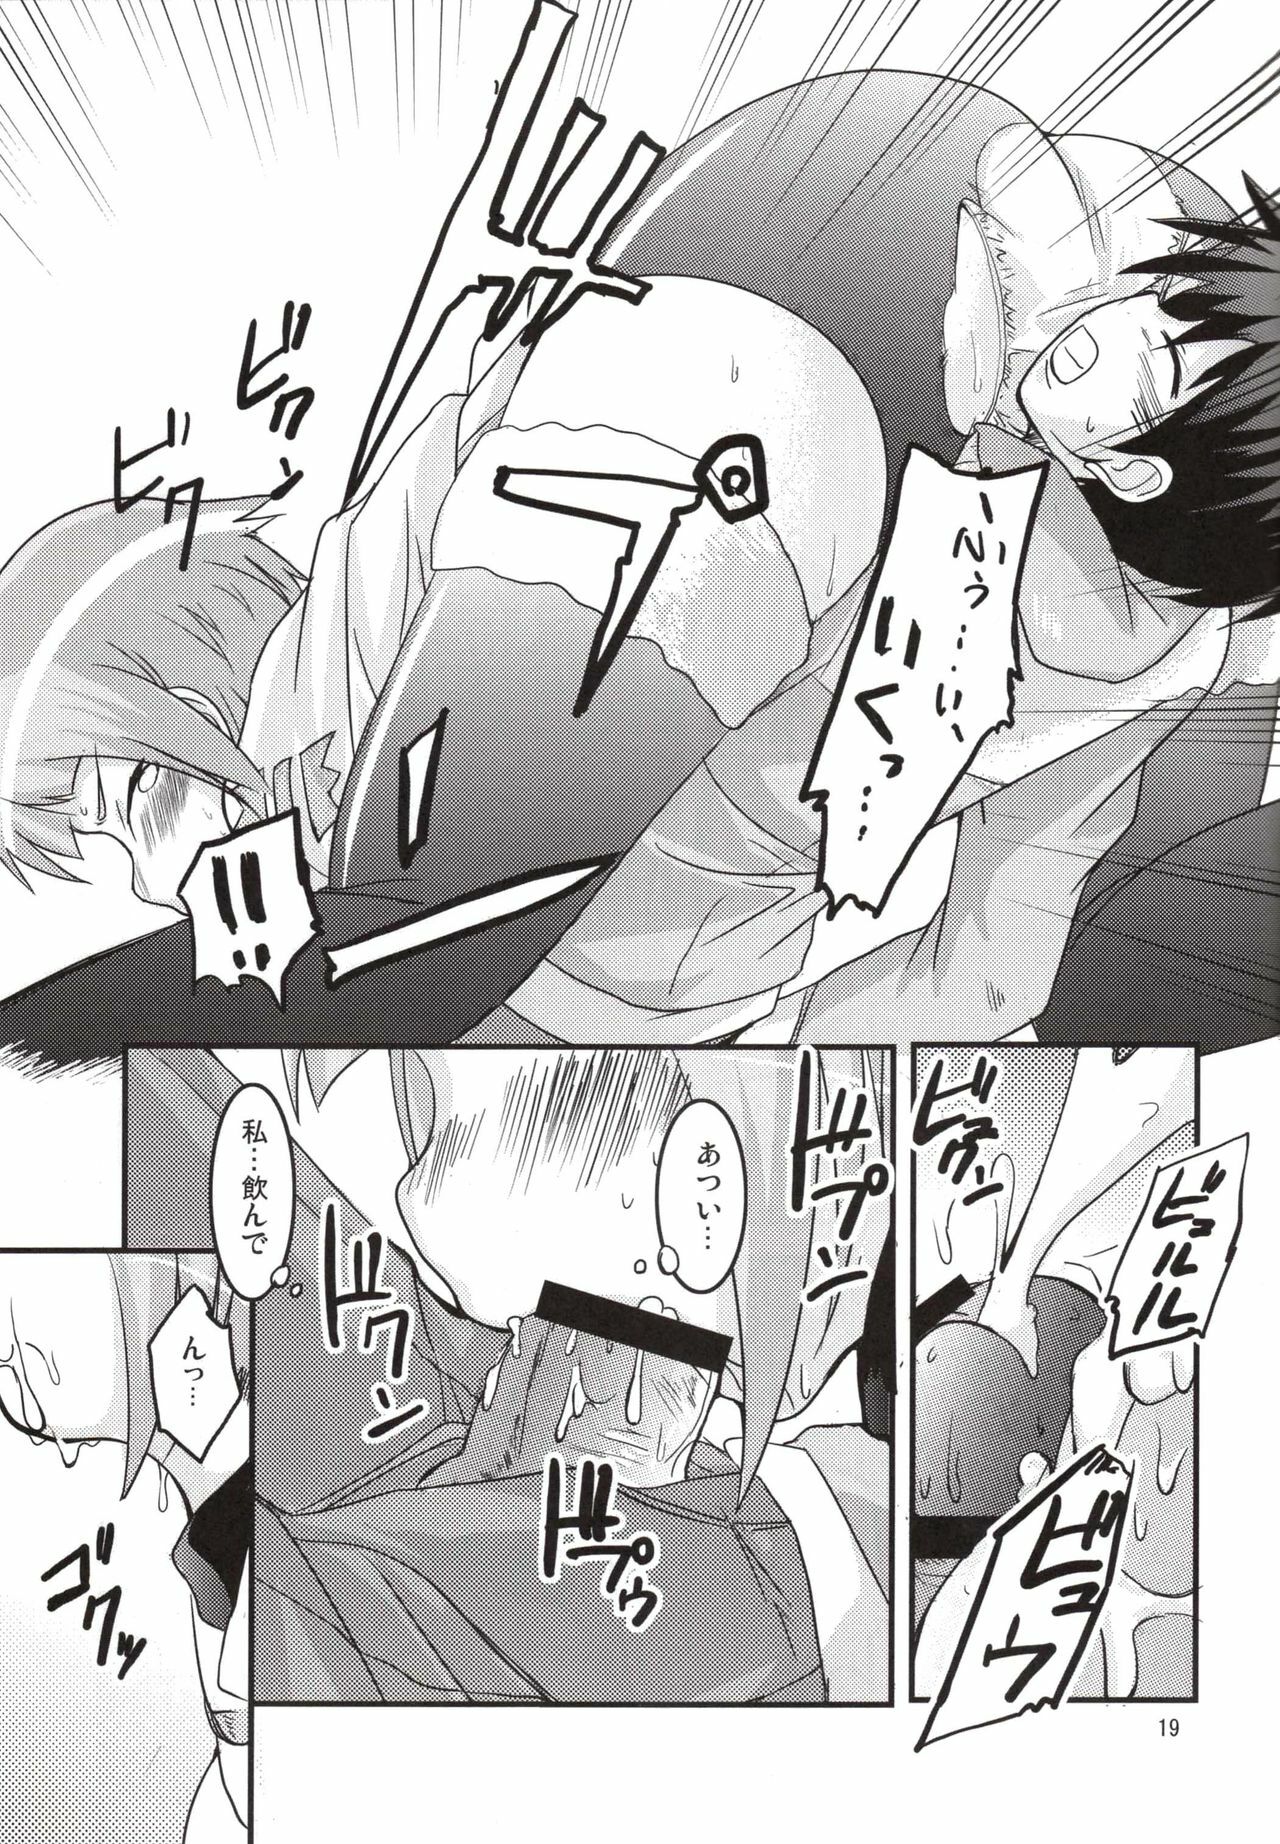 (SC37) [SOUND STICKER (Yoshida Masahiko)] Odekoron Knight (Zero no Tsukaima) page 19 full